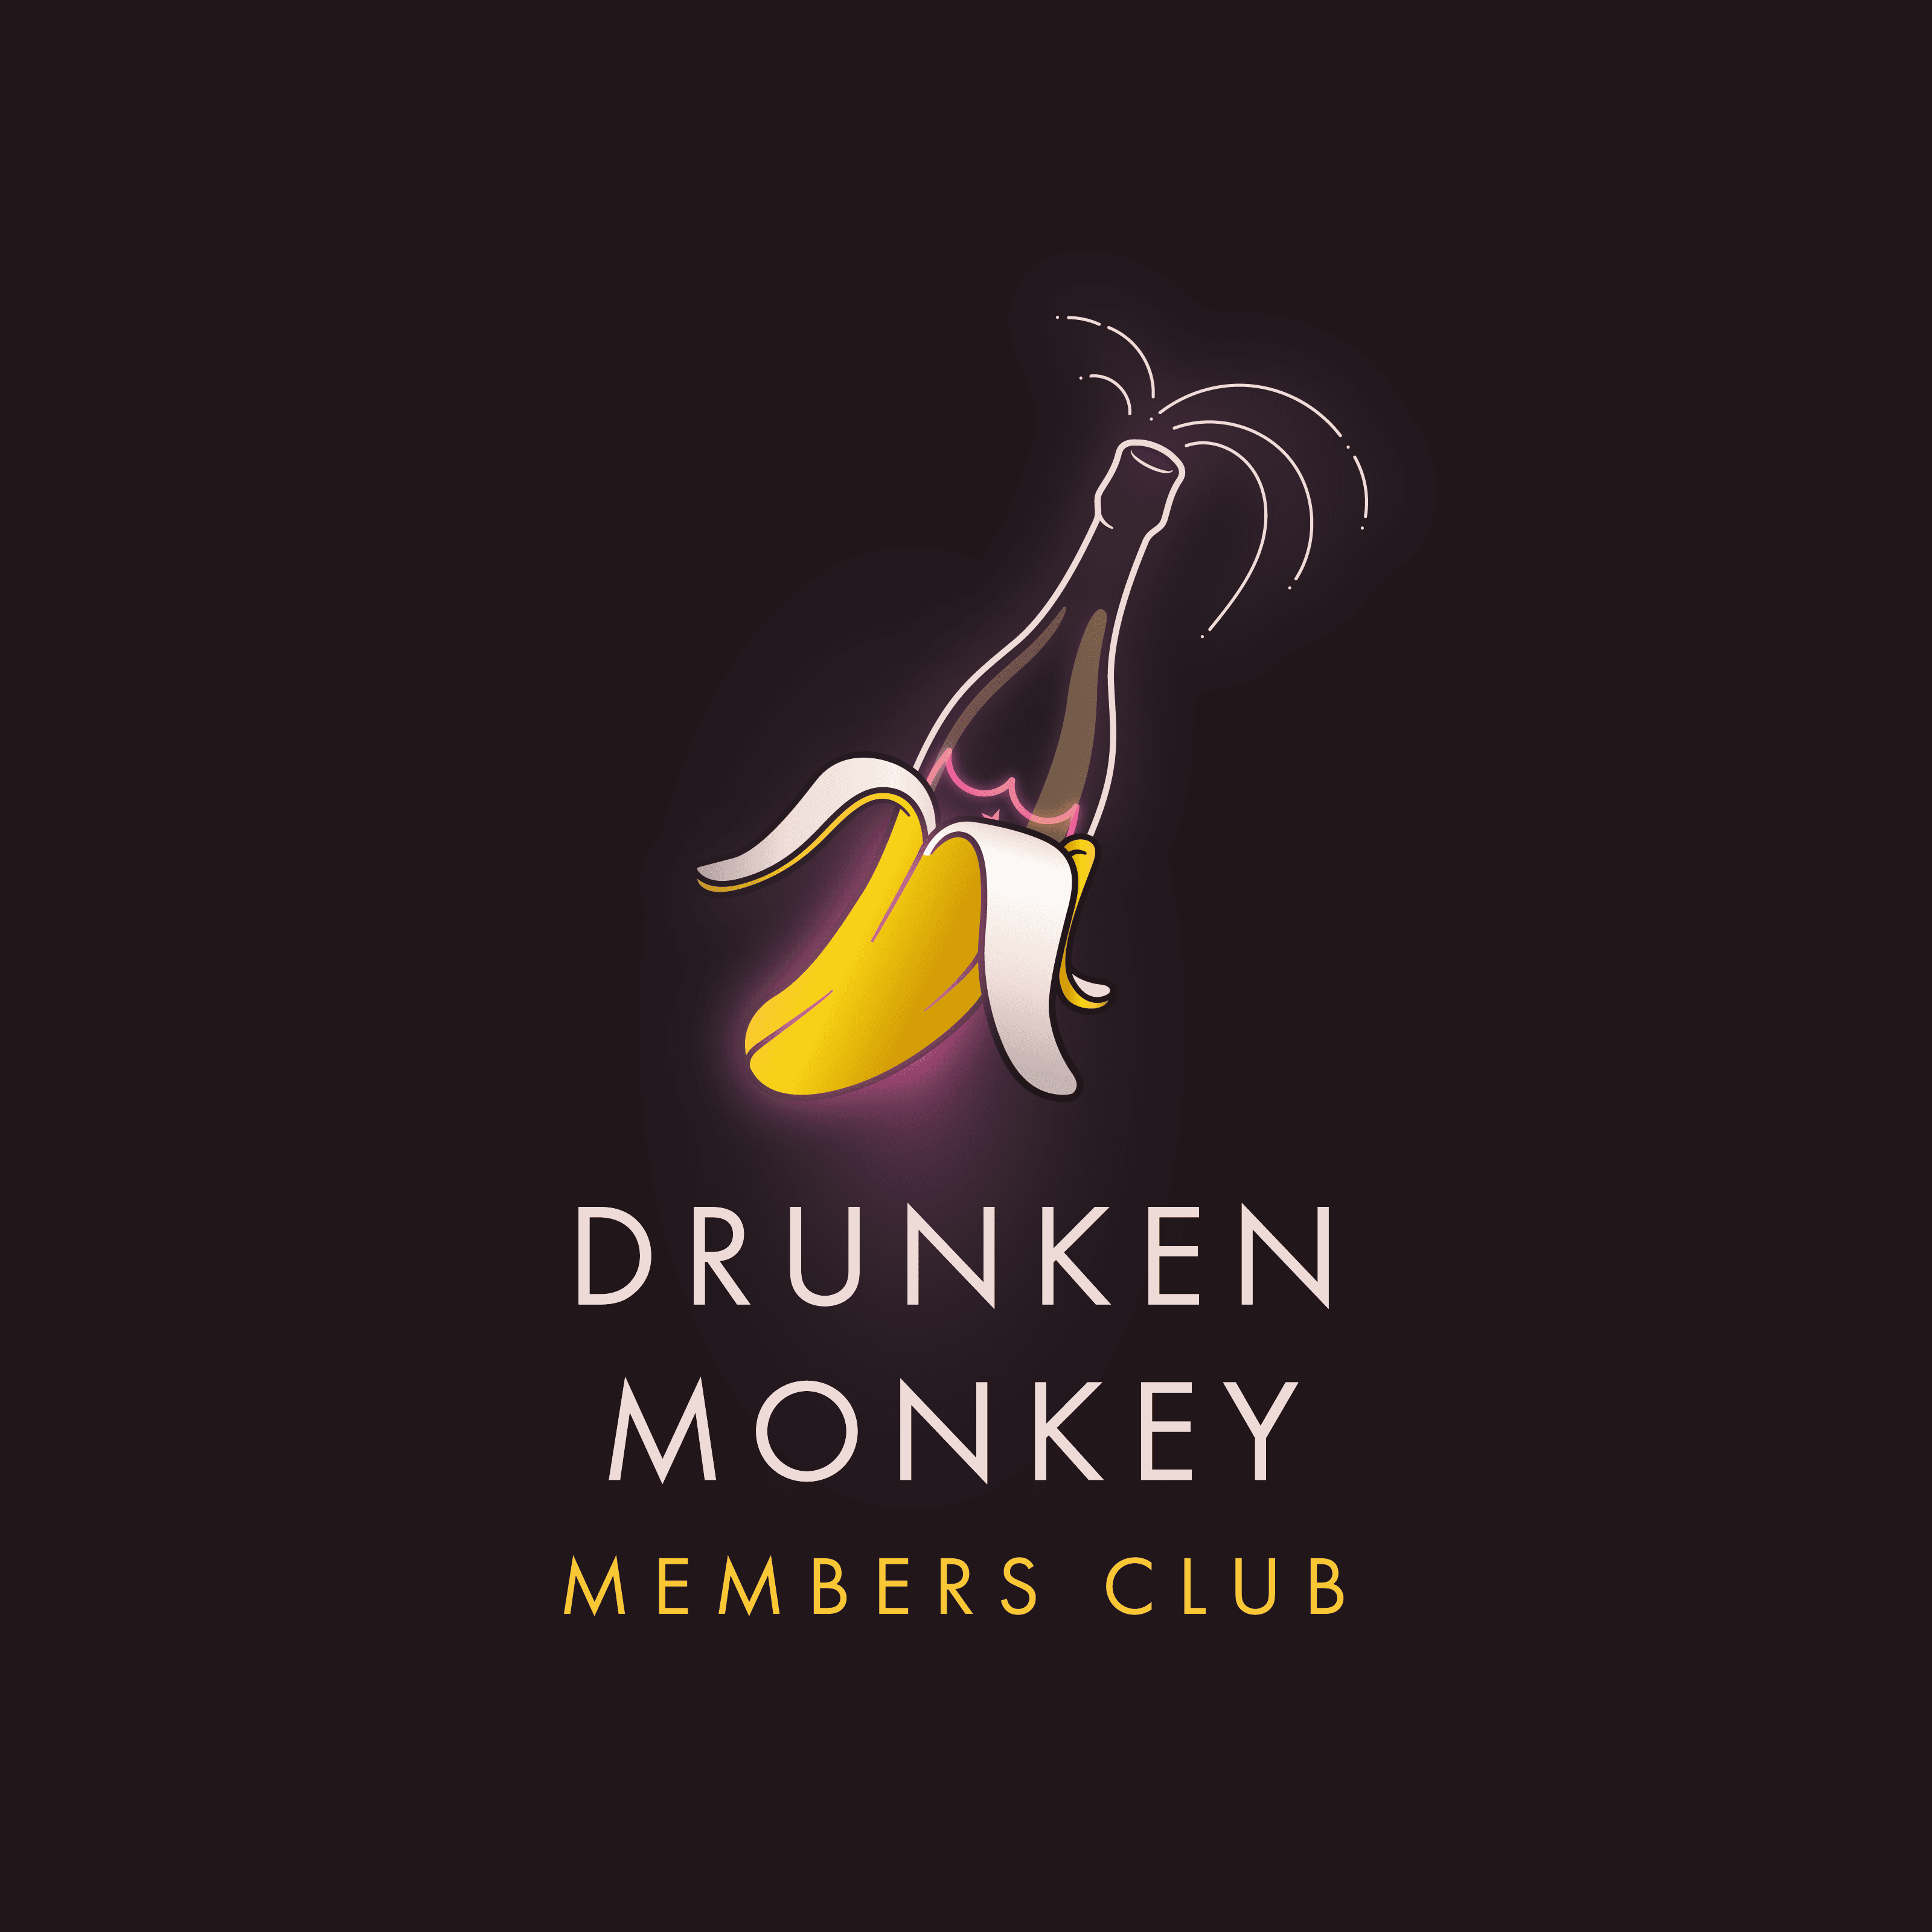 Drunken Monkey Members Club